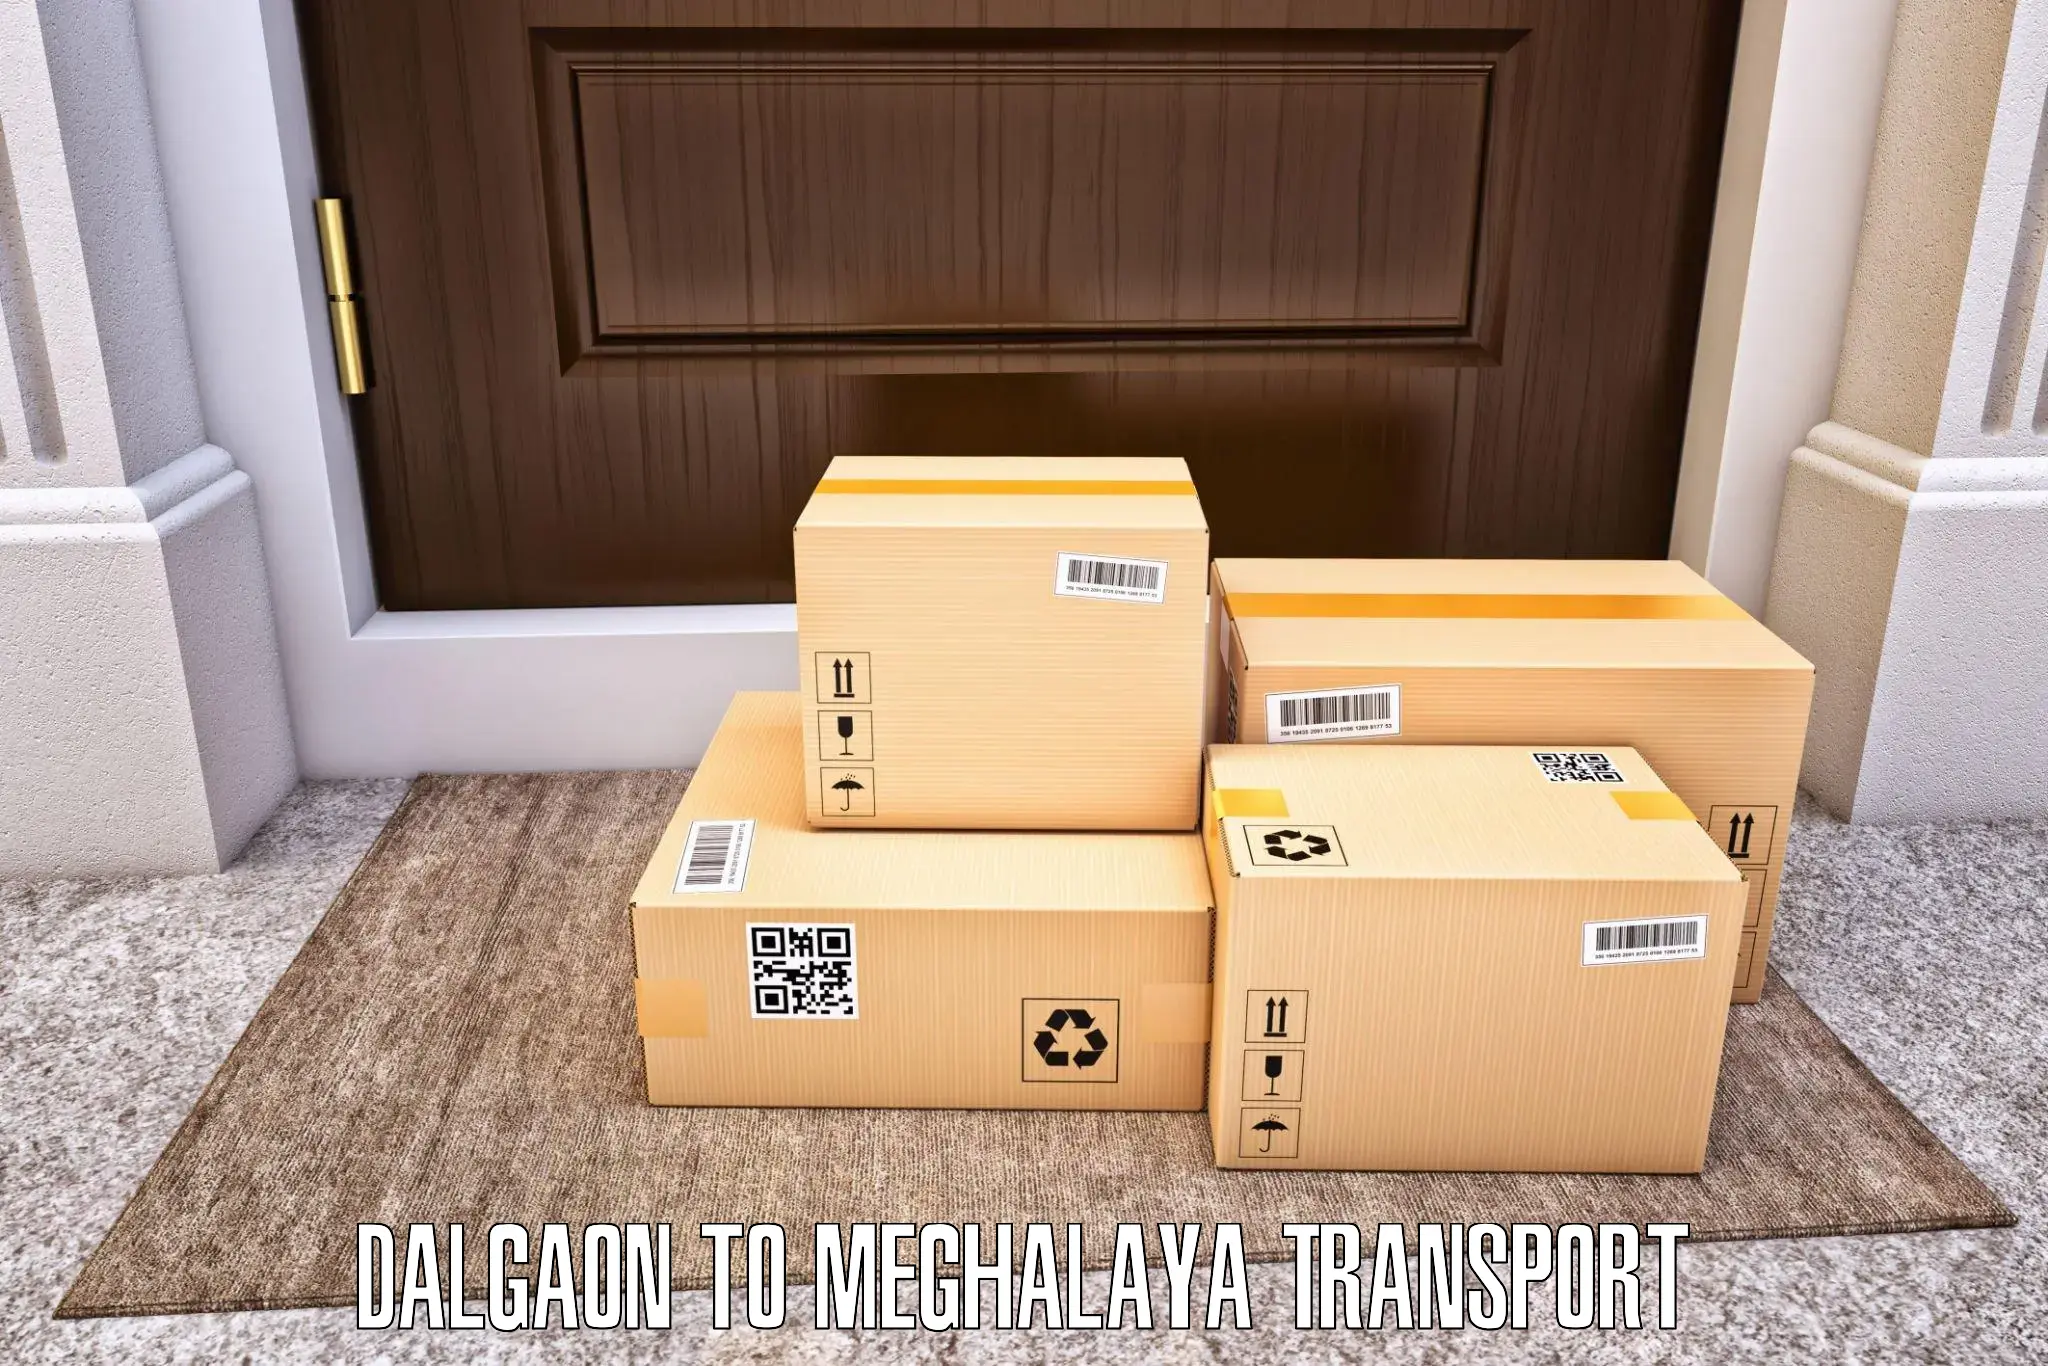 Vehicle transport services Dalgaon to NIT Meghalaya